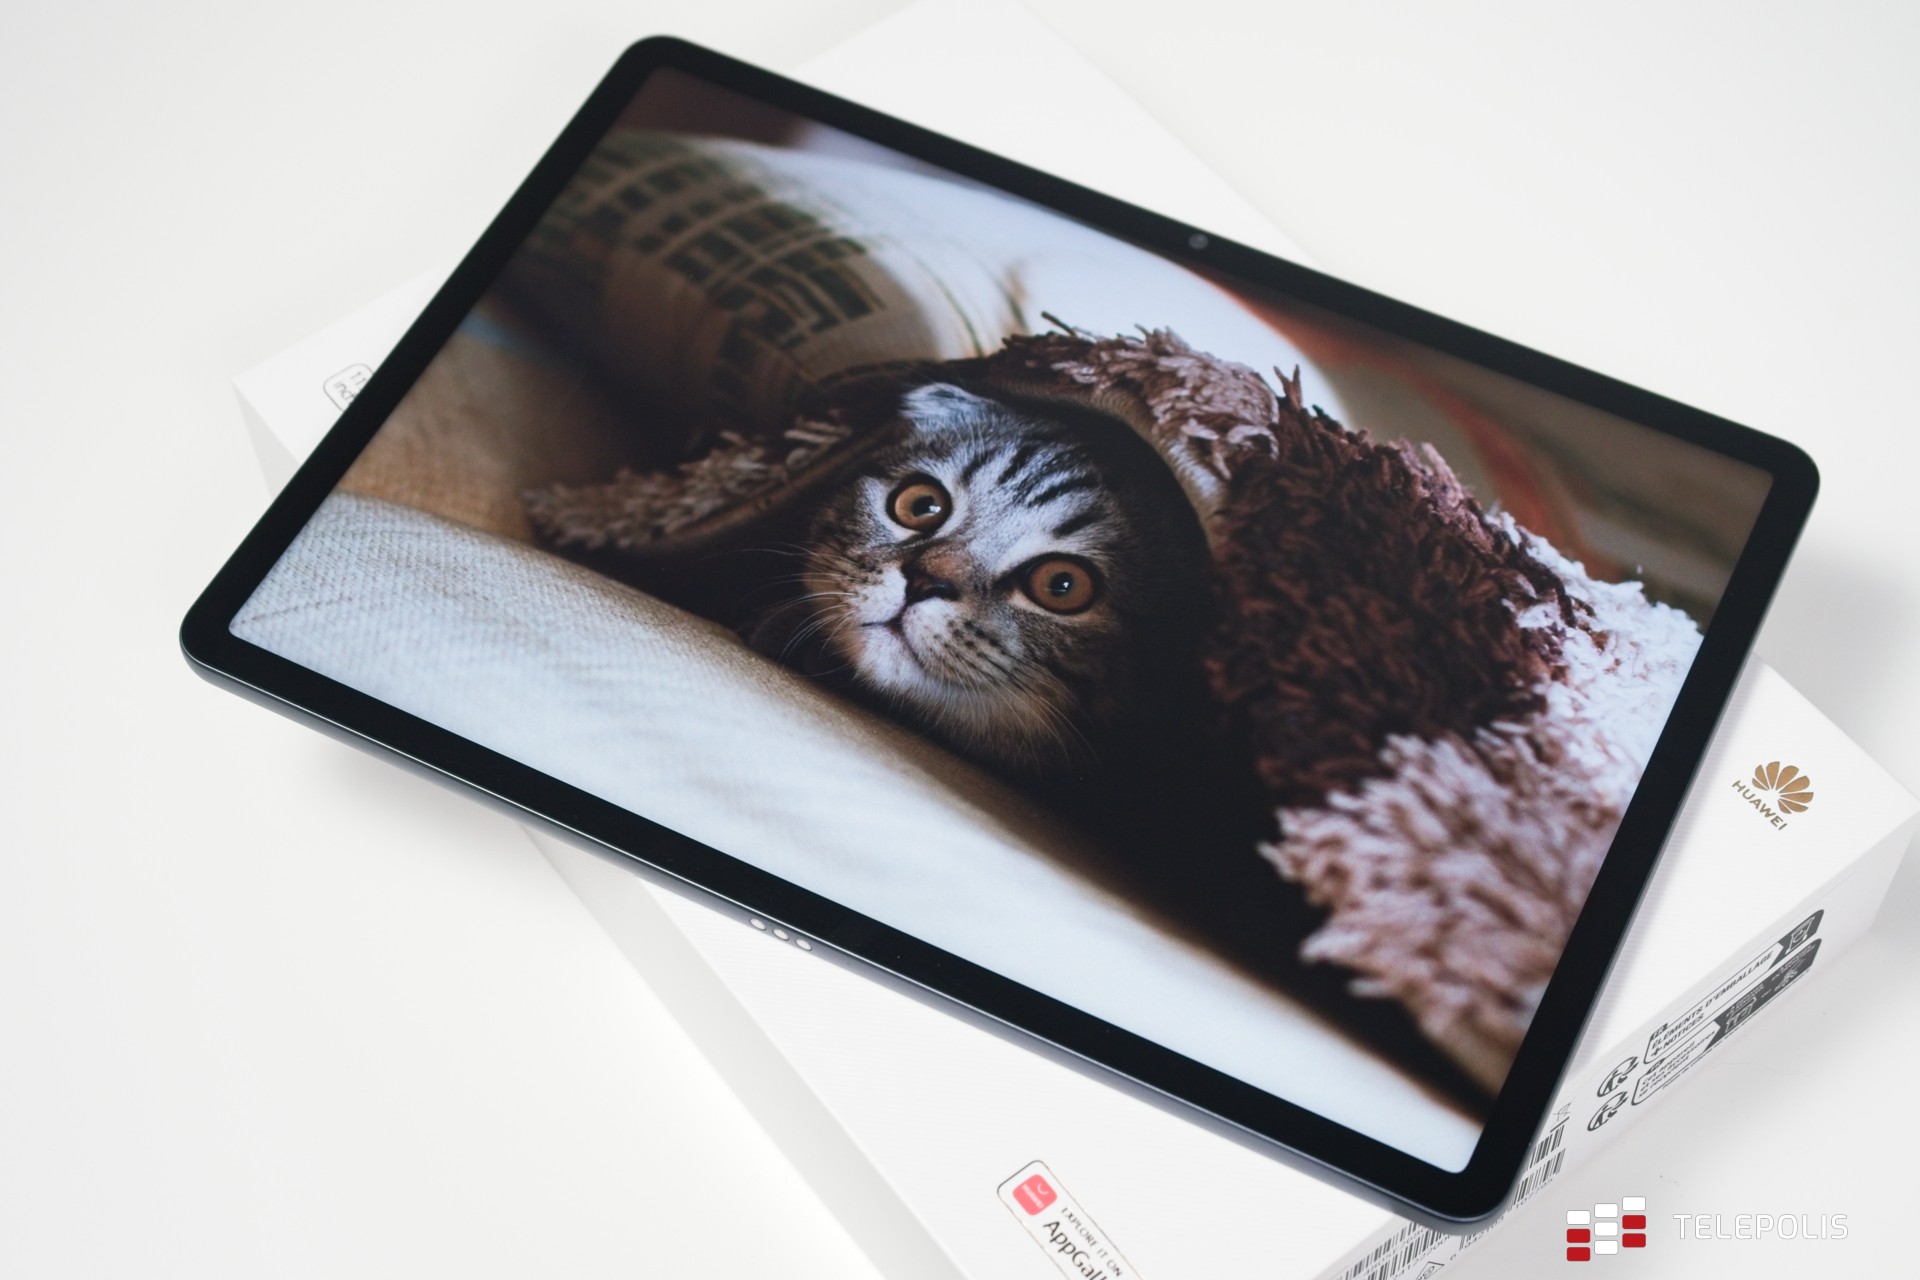 6 powodów, dla których tablet z matowym wyświetlaczem jest lepszy - Huawei MatePad 11.5" PaperMatte Edition